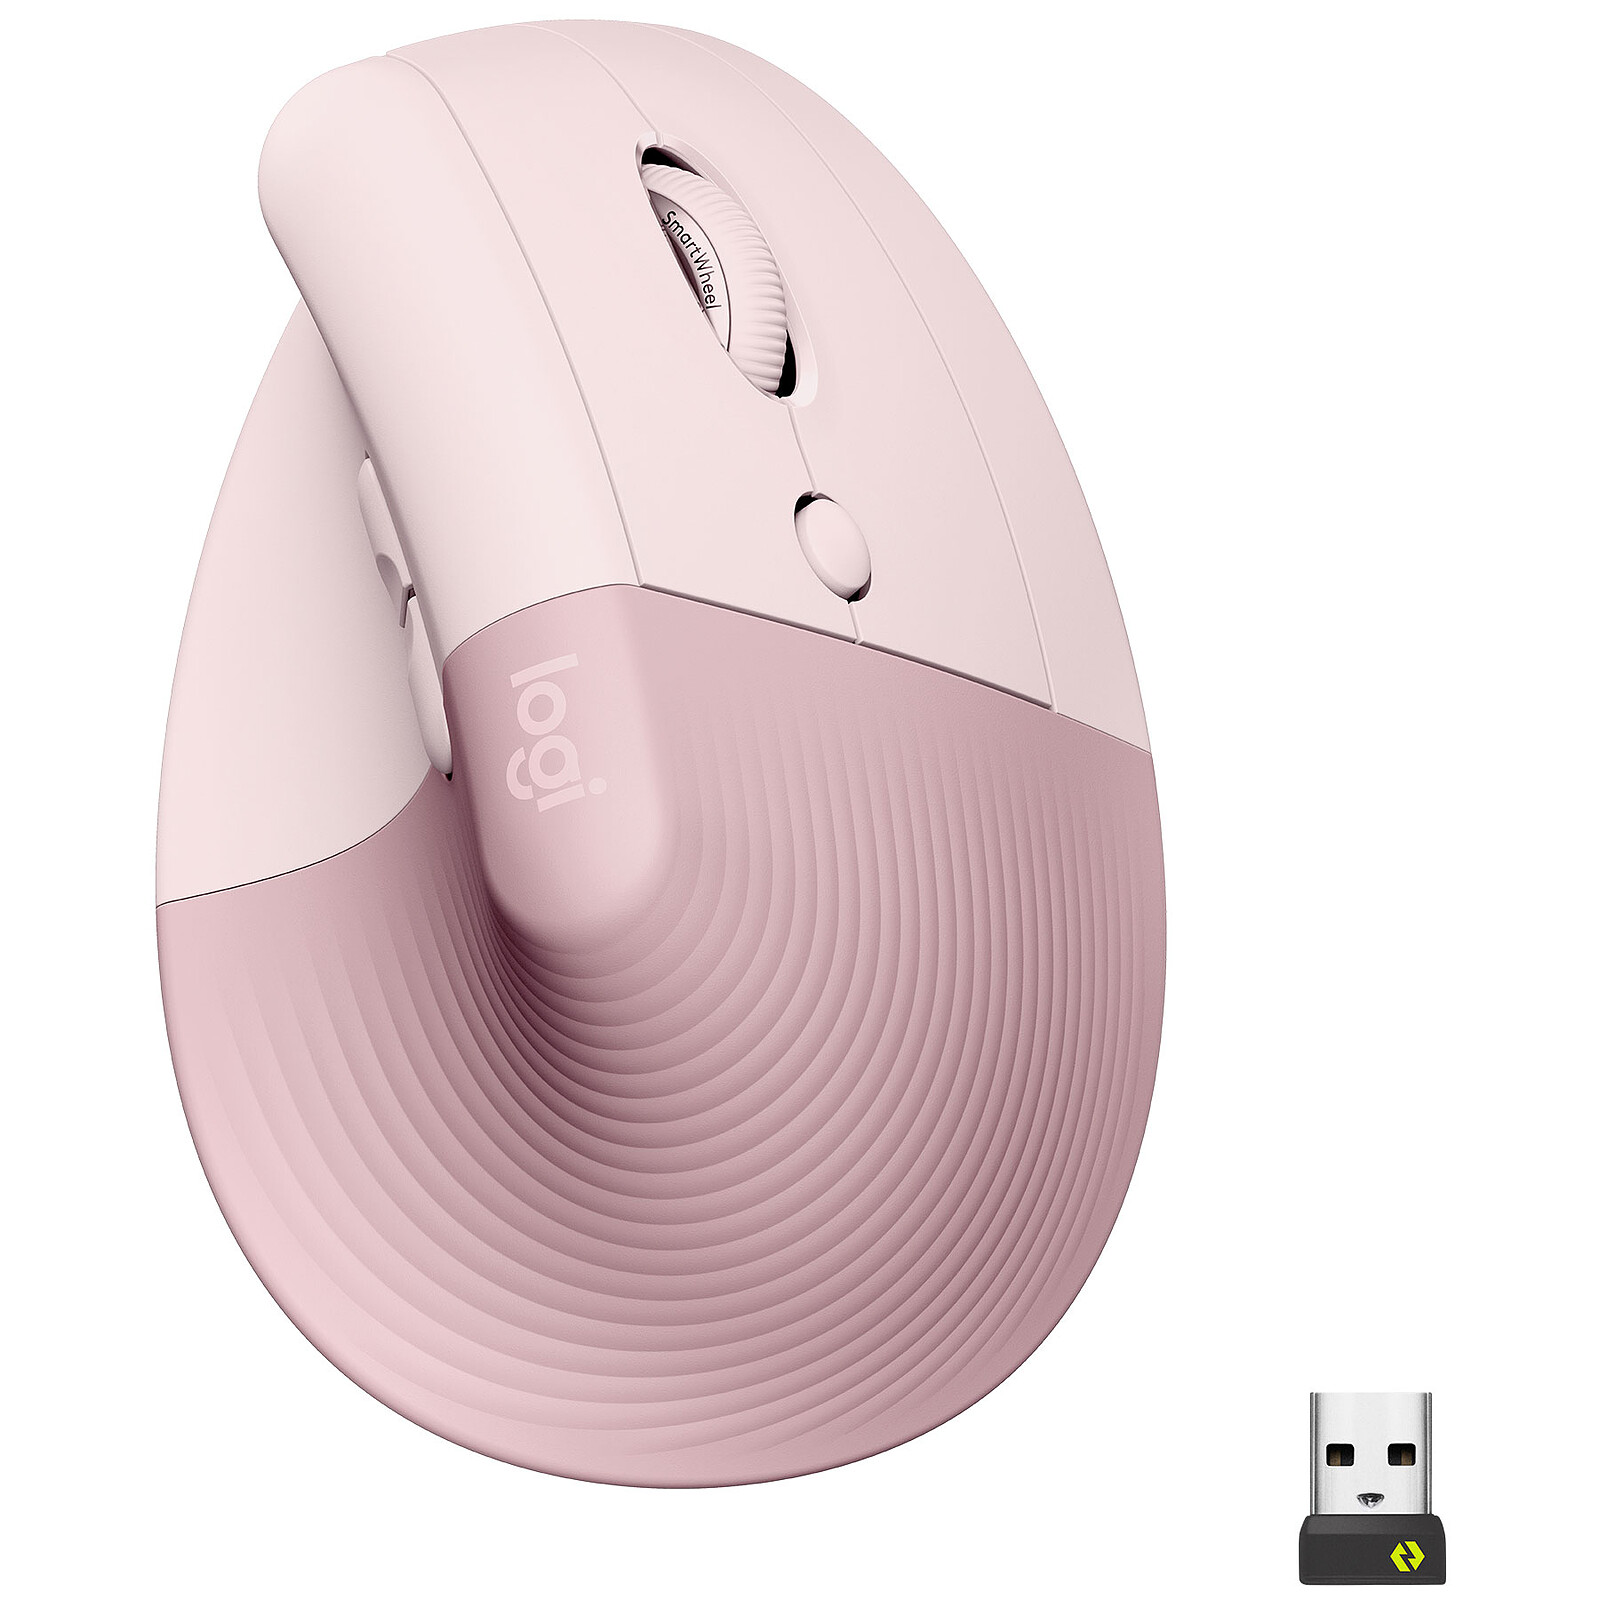 Microsoft Surface Precision Mouse Noir - Souris PC - Garantie 3 ans LDLC